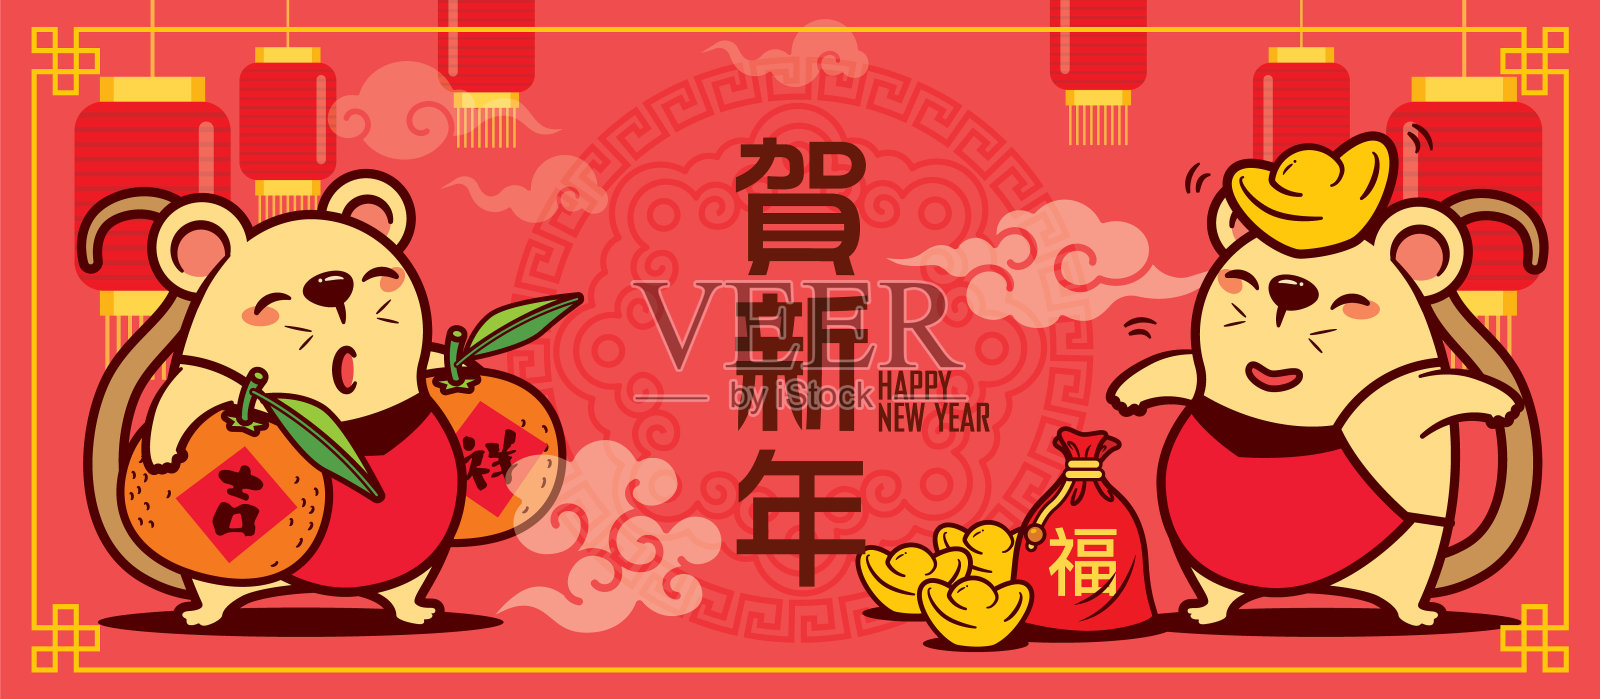 可爱的老鼠拿着金币元宝和桔子挂在红灯笼上，用汉字写着新年的祝福——向量设计模板素材